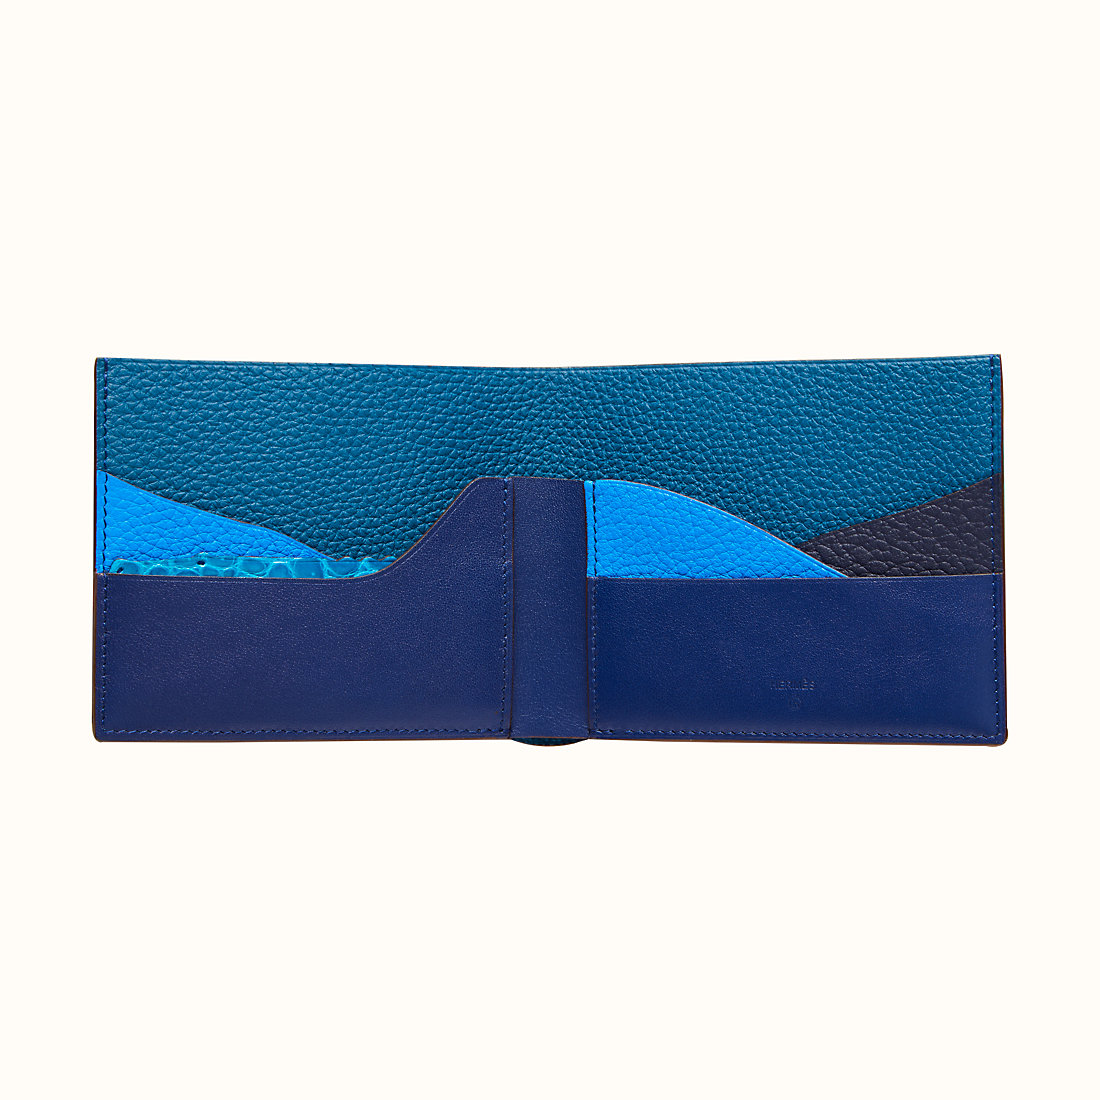 クロコダイル財布でオススメのブランド財布はHERMESの財布クロコダイルです